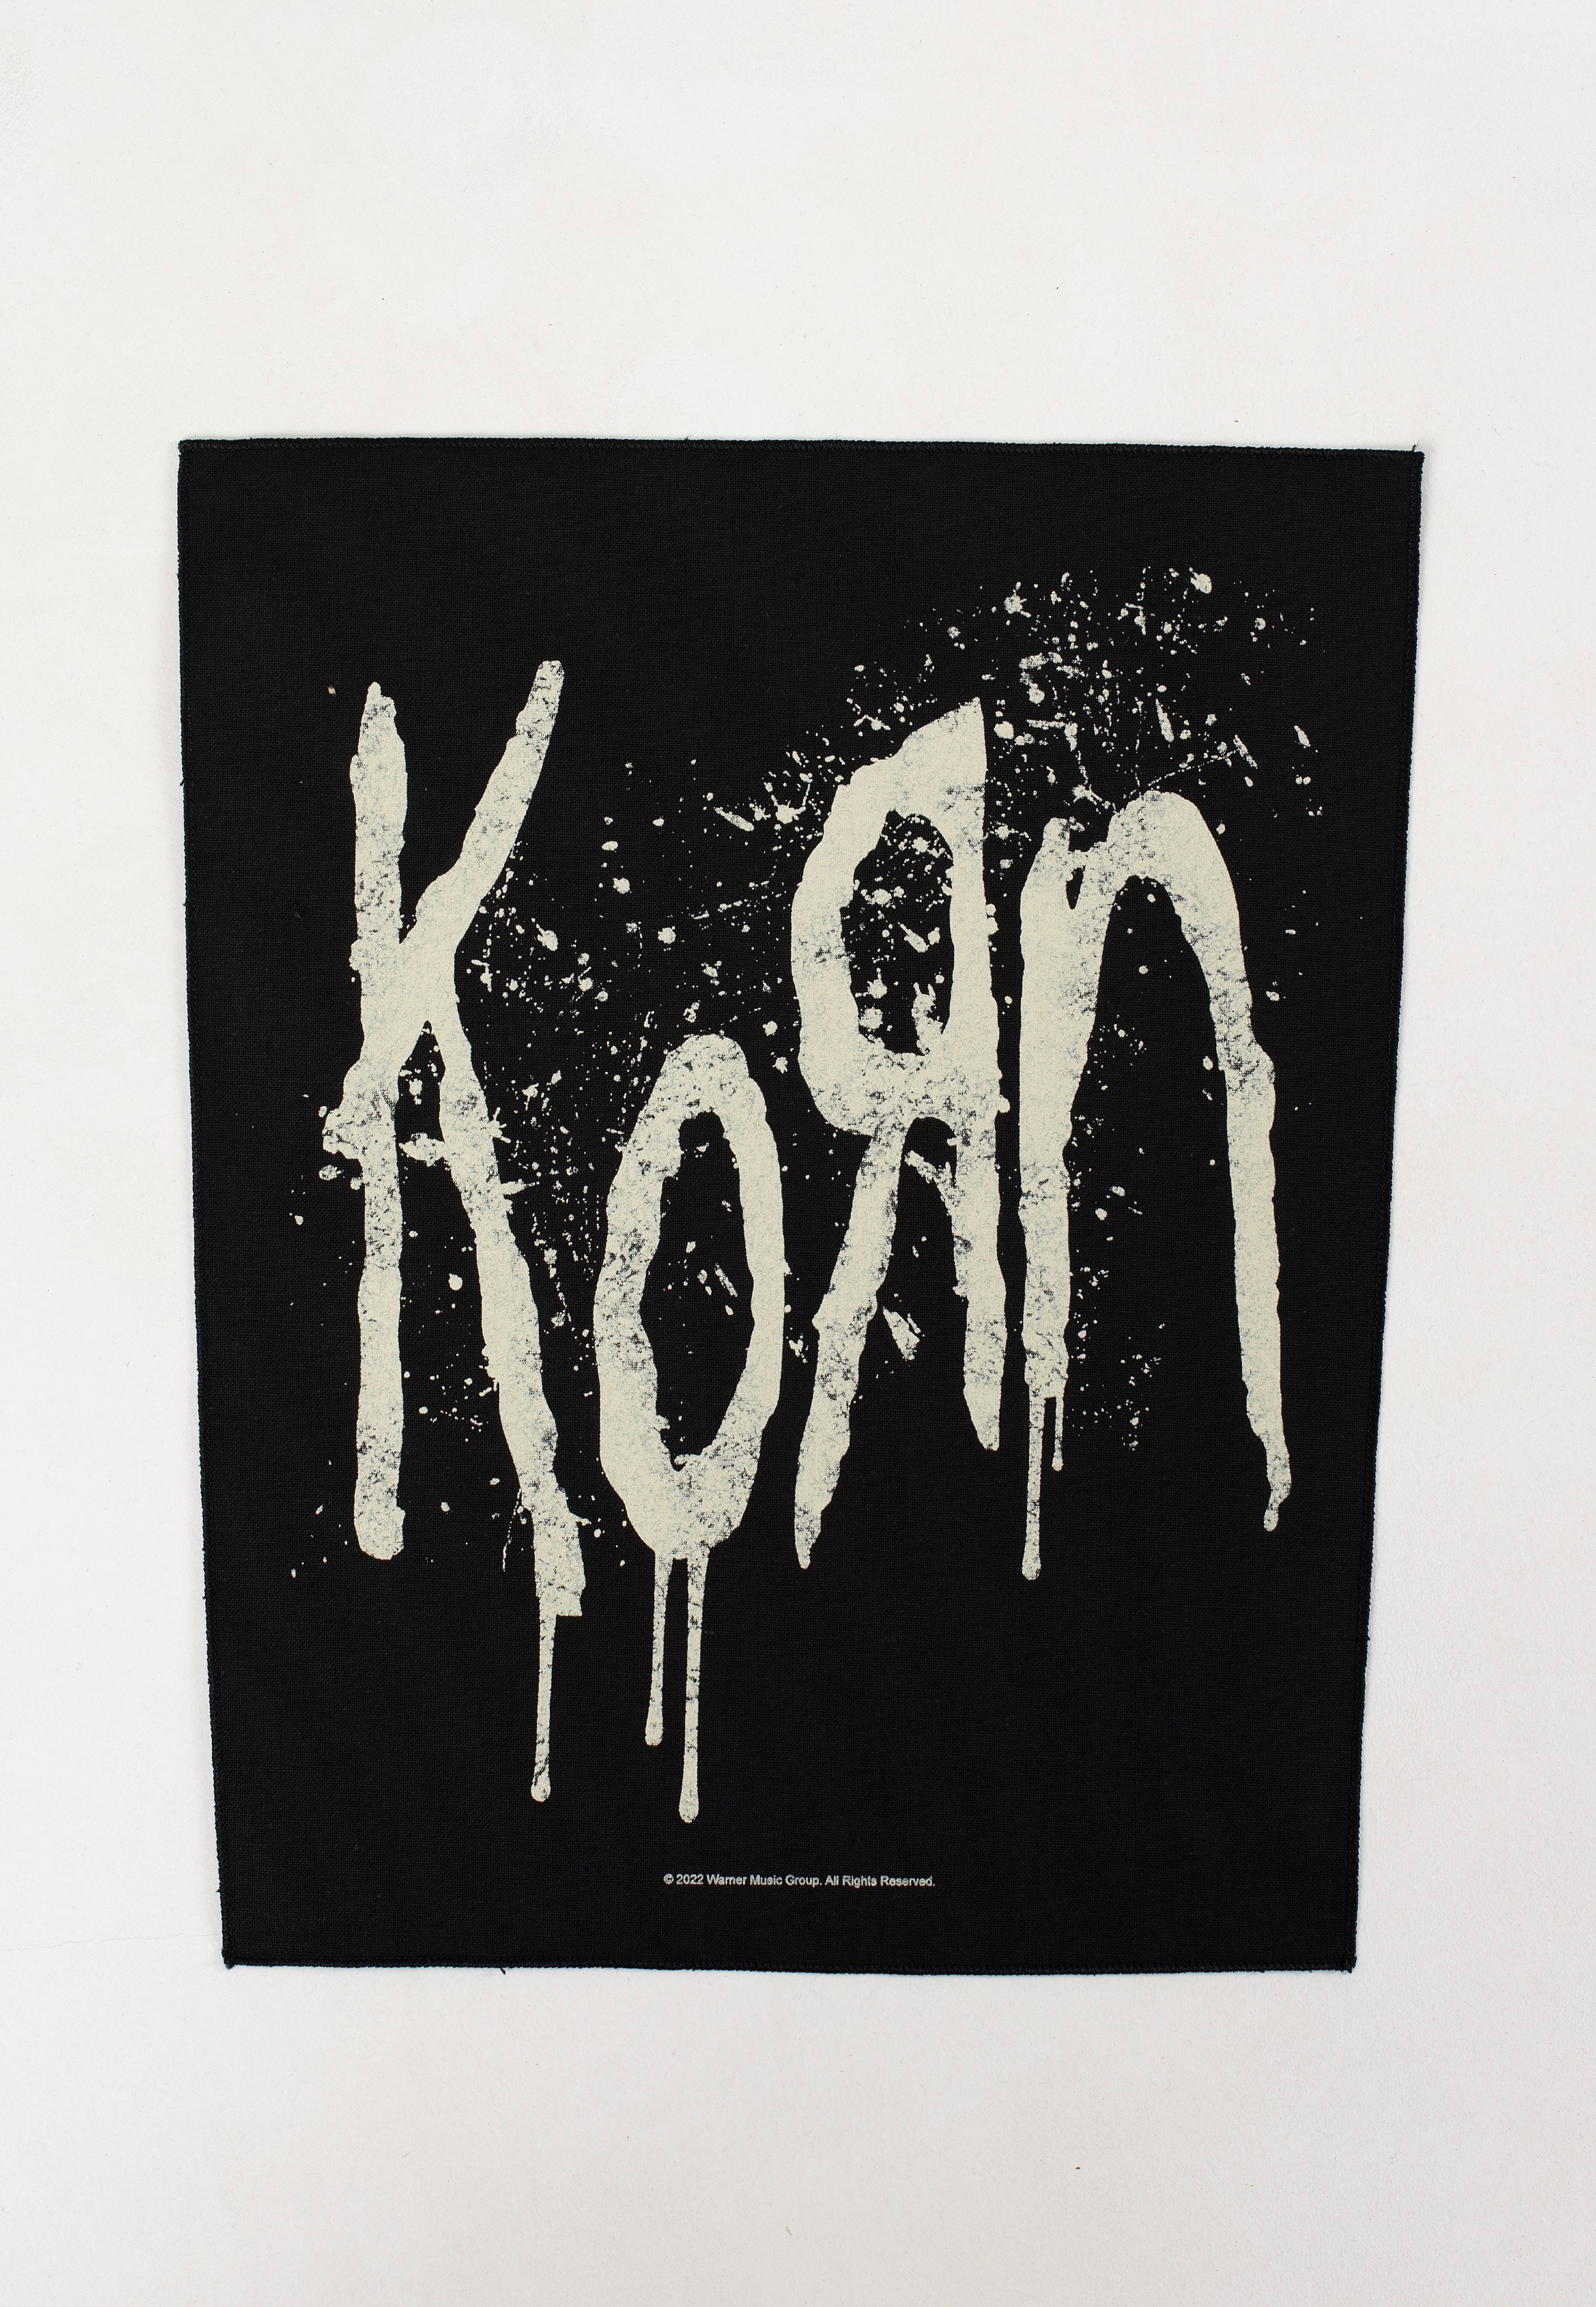 Korn - Splatter Logo - Backpatch